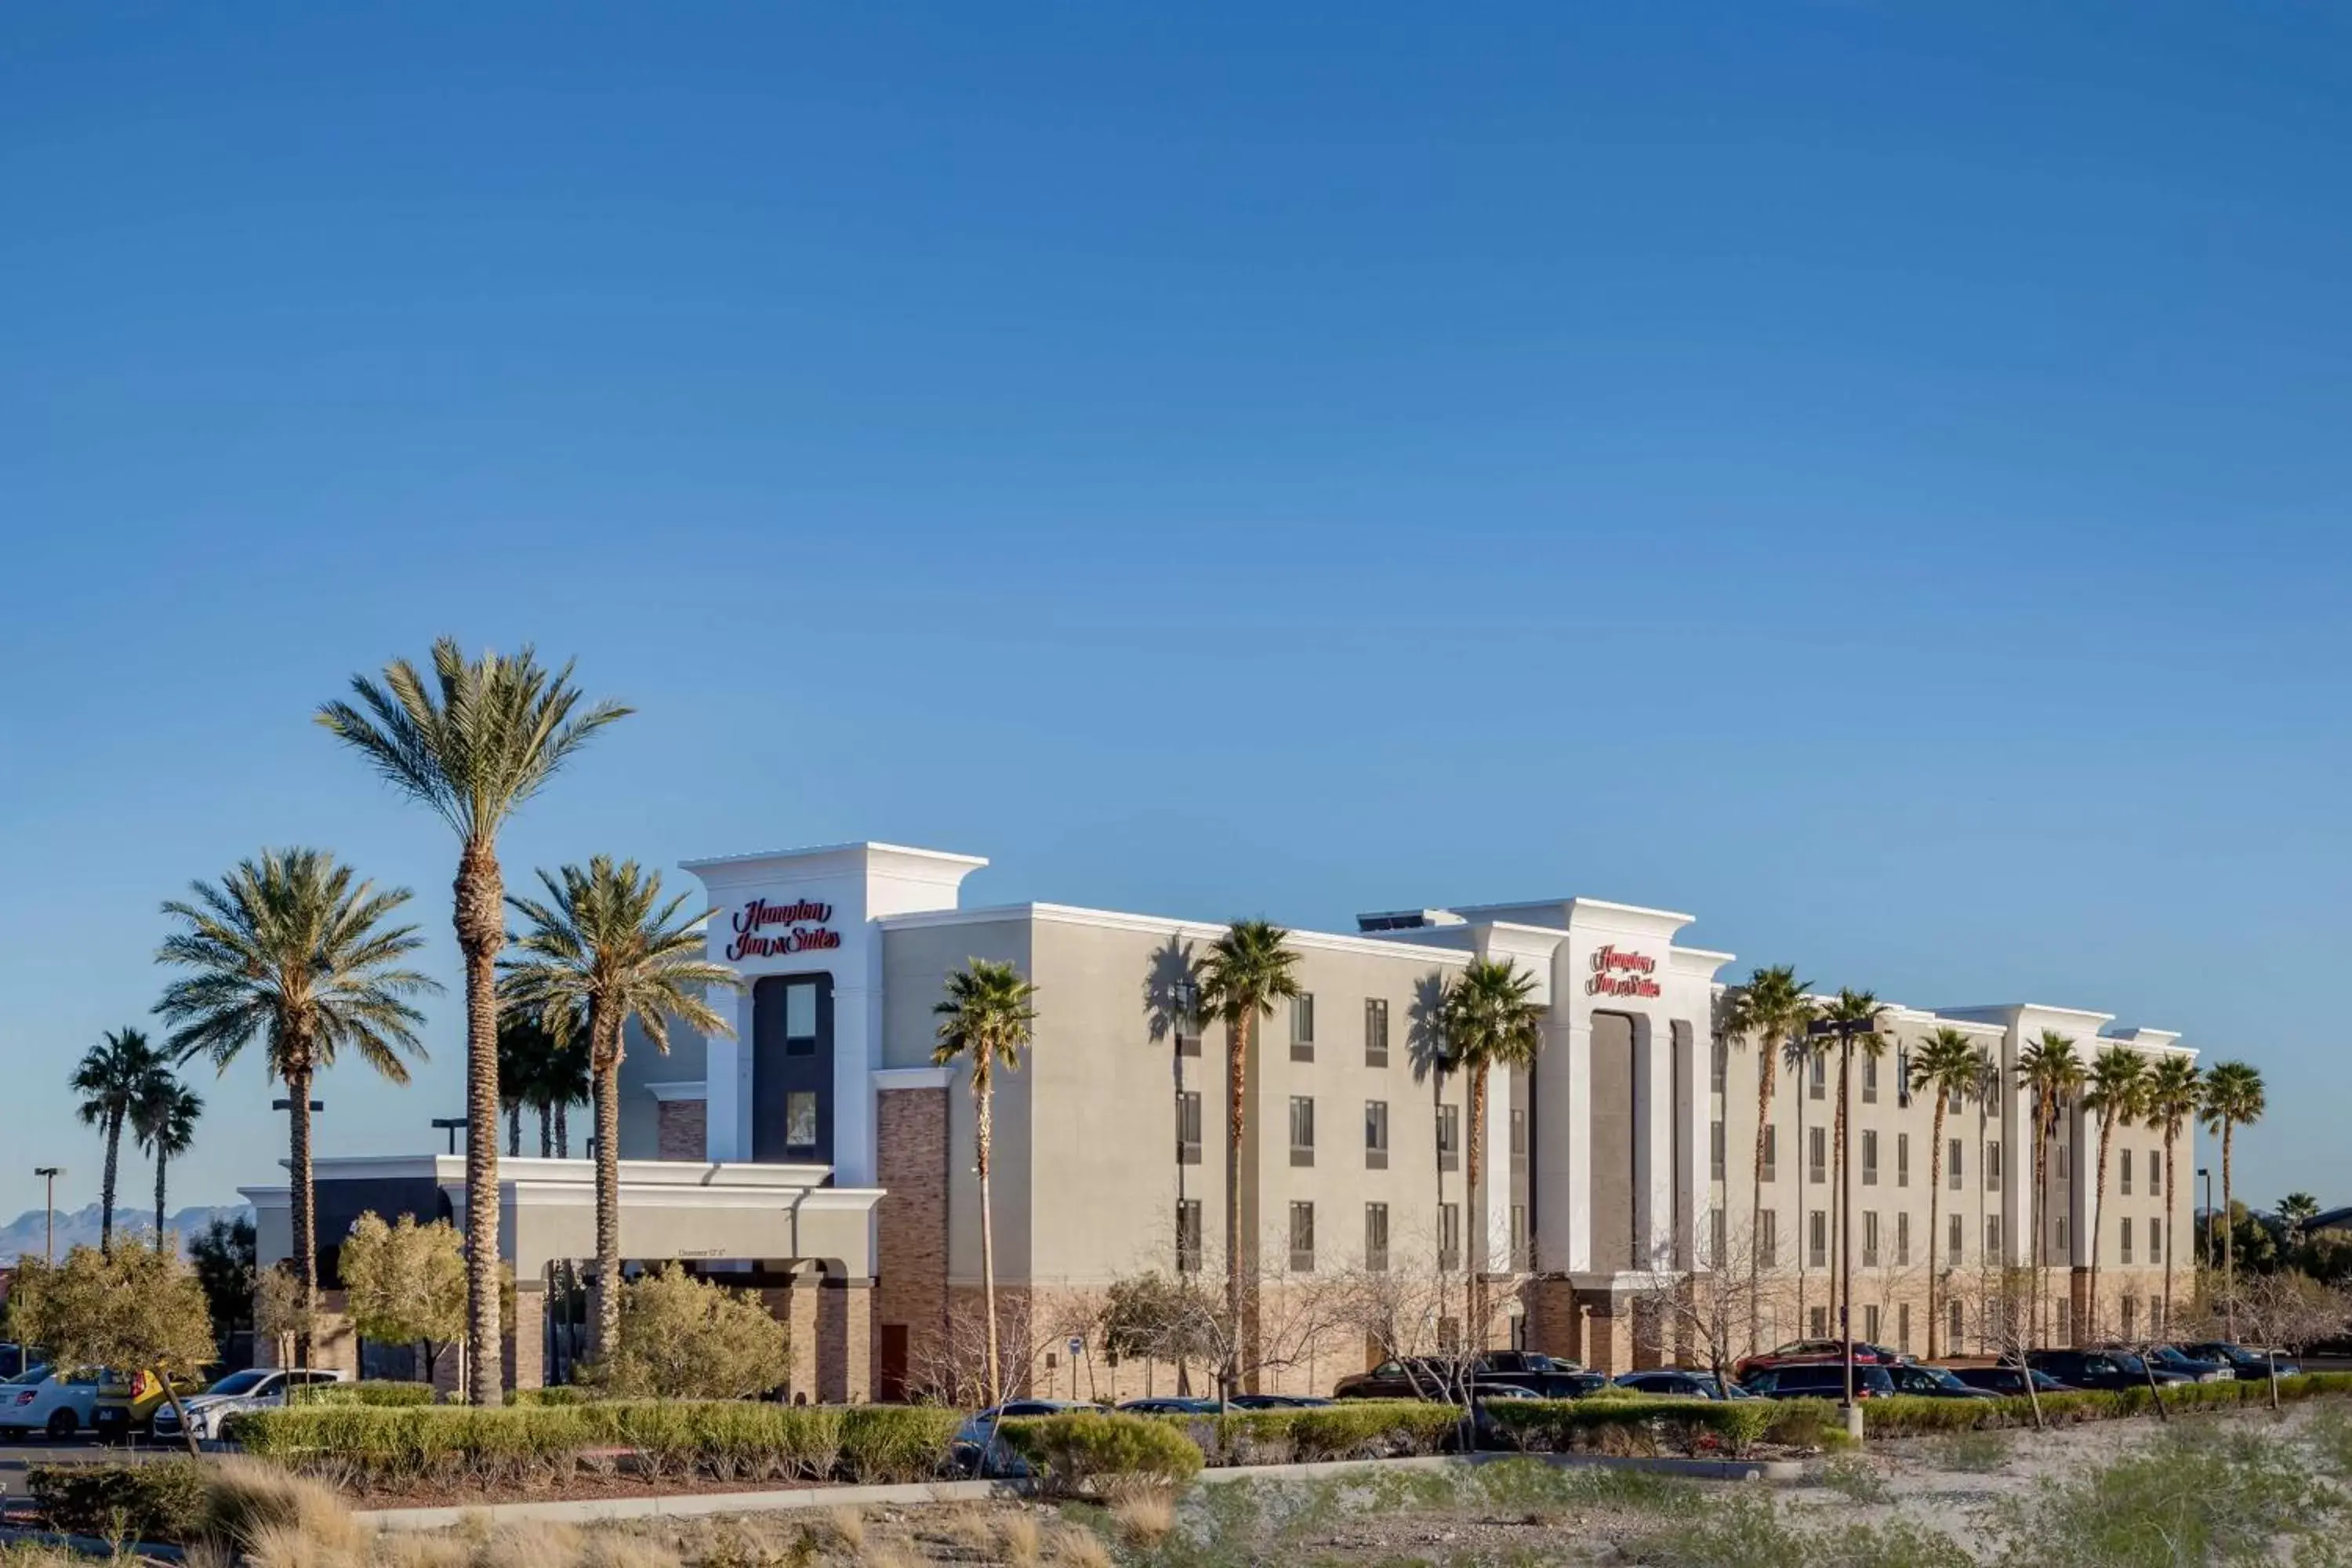 Property Building in Hampton Inn & Suites Las Vegas-Red Rock/Summerlin